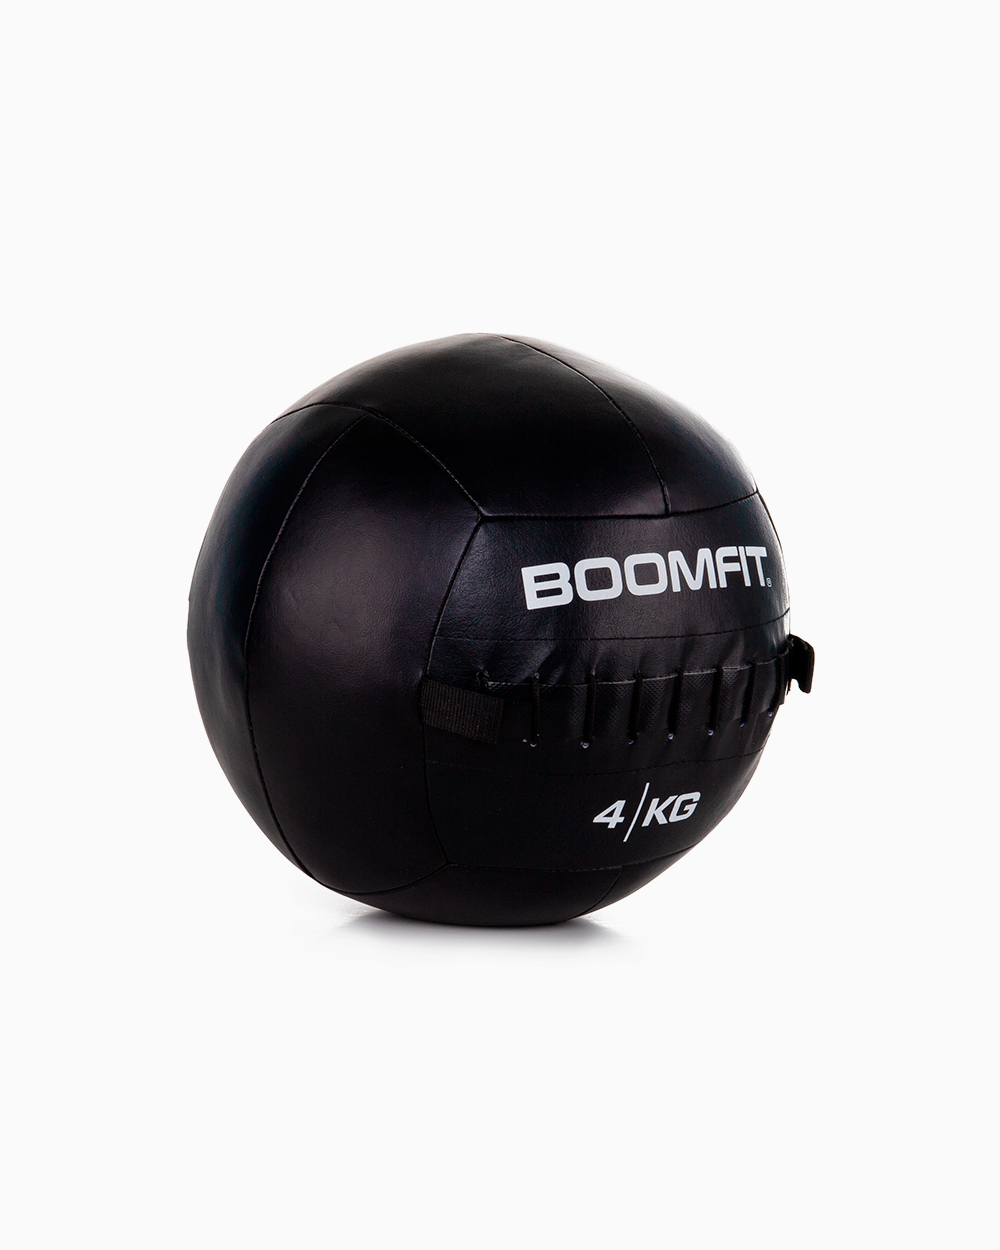 Wall Ball 4kg - Boomfit